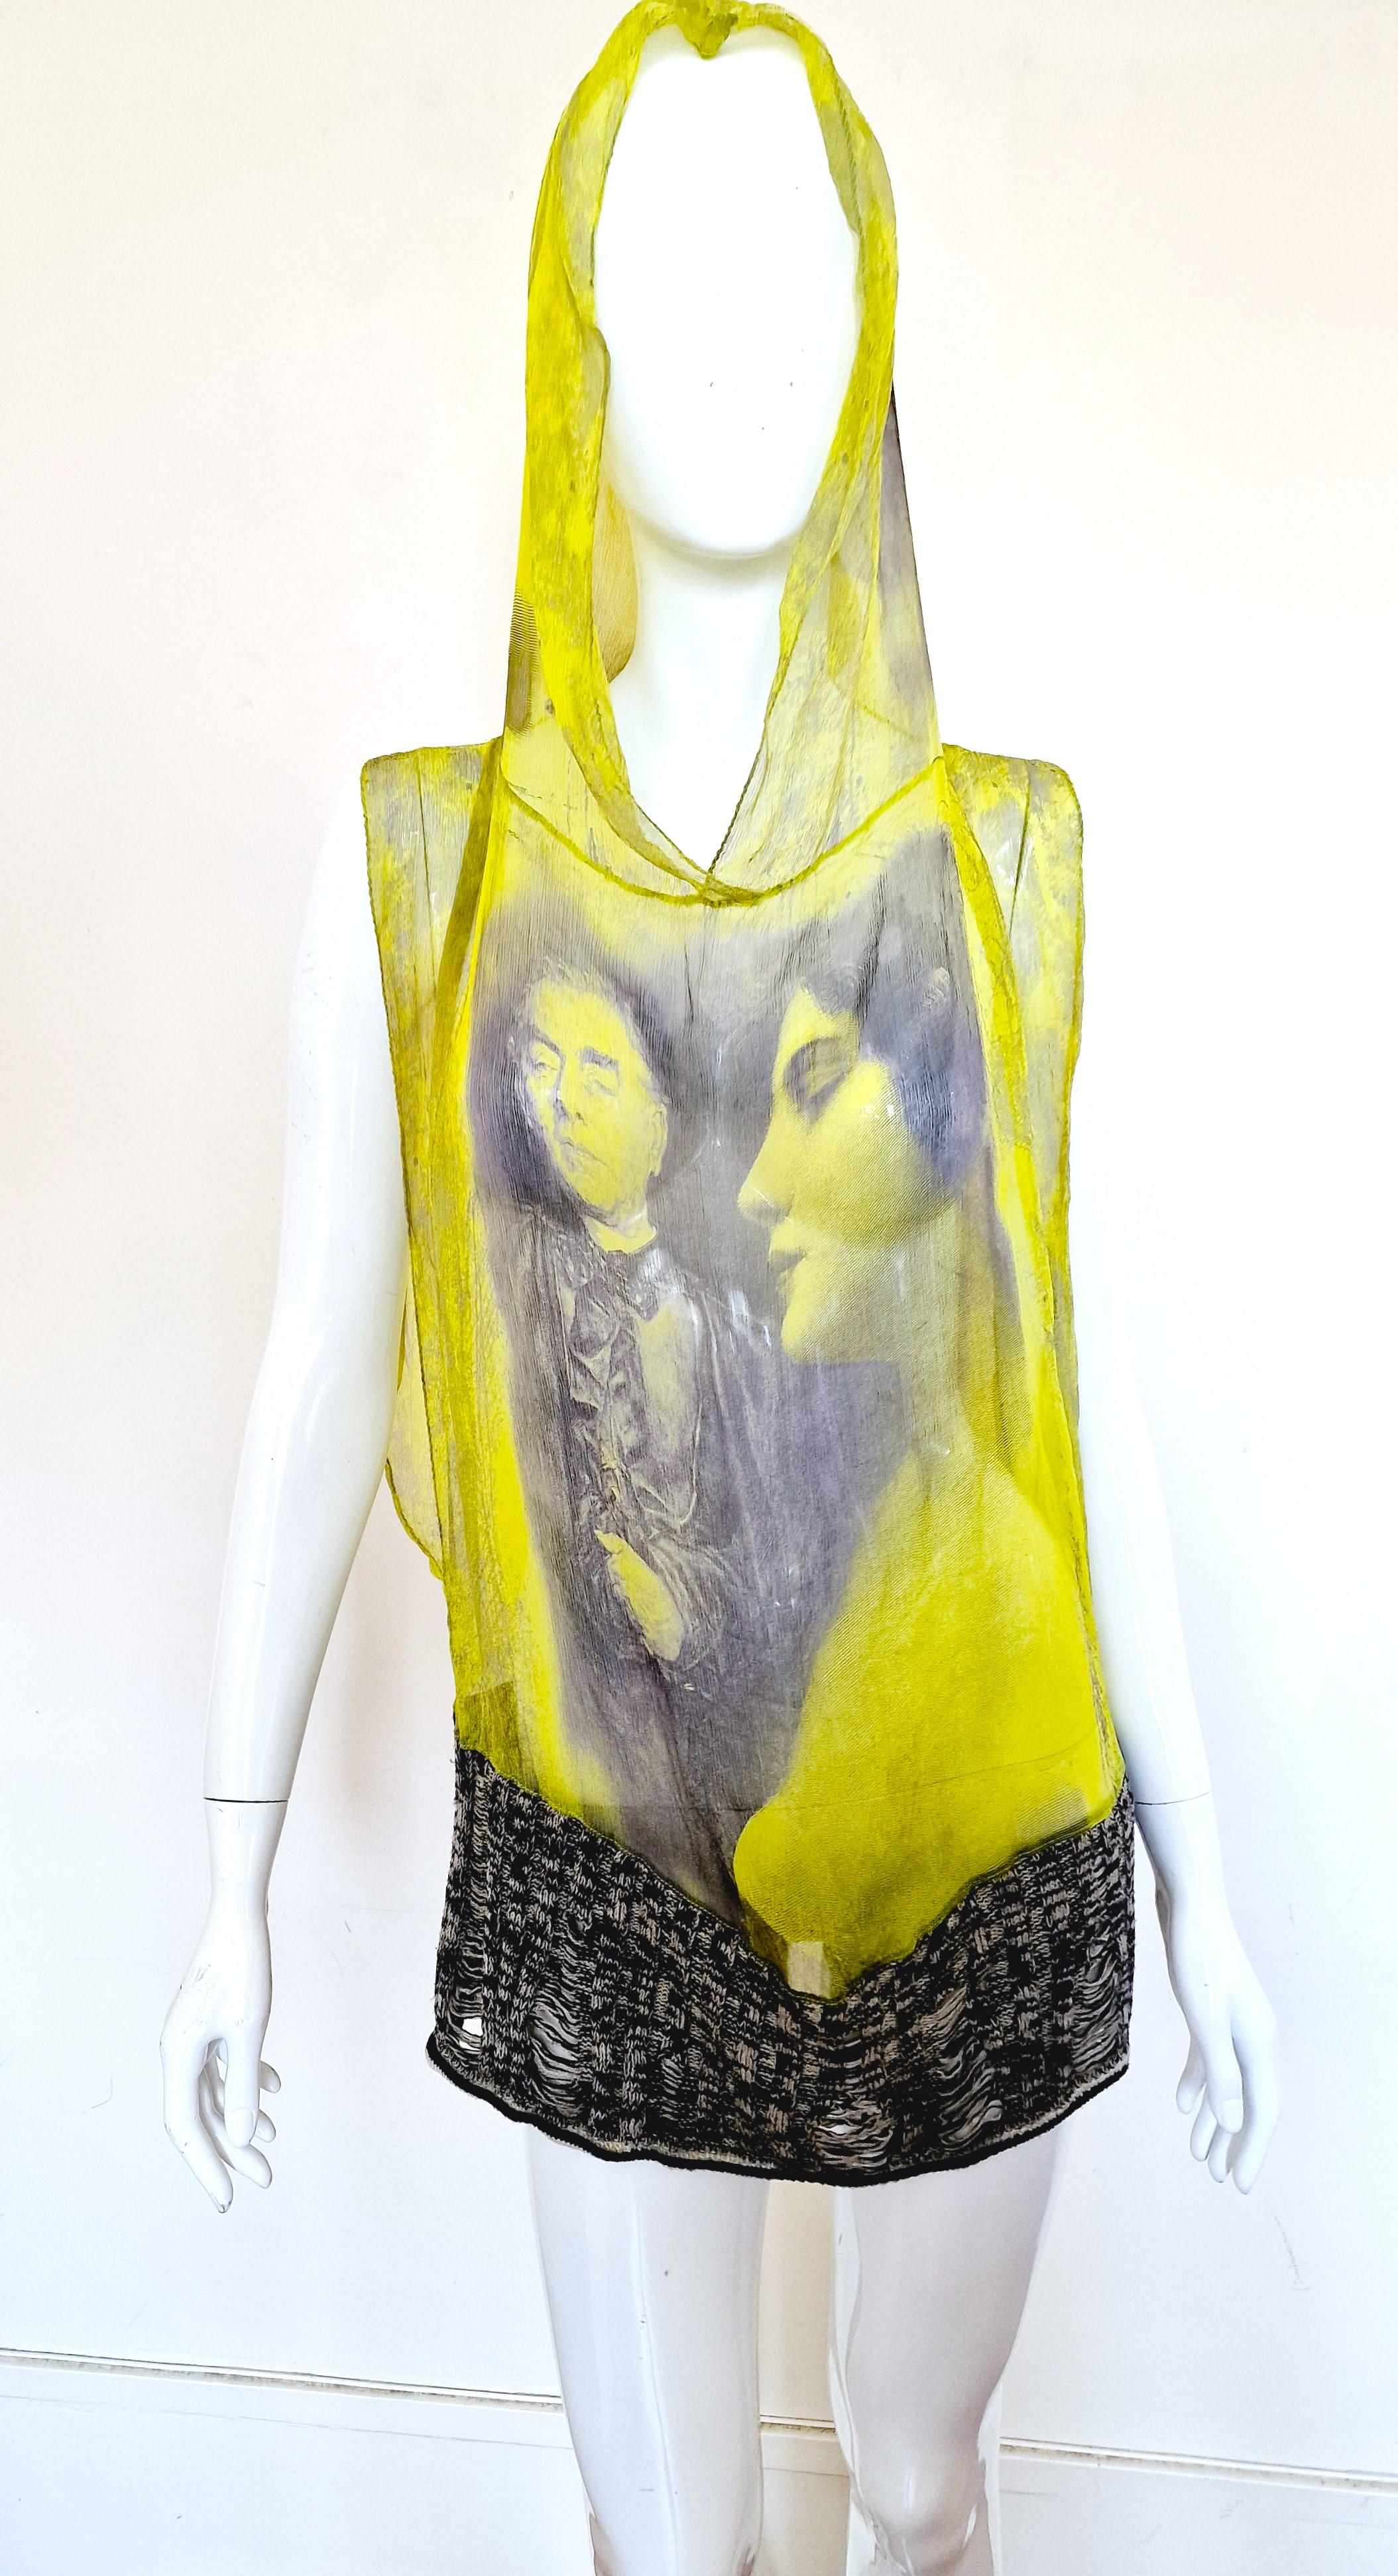 Top/robe en soie iconique de Jean Paul Gaultier !
Transparent.
Coupure profonde au niveau des aisselles !
Elle peut être portée comme une mini robe (si vous êtes plus petite, la longueur : 70 cm = 27,6 inch) ou comme un top.
Avec capuche.
100% soie